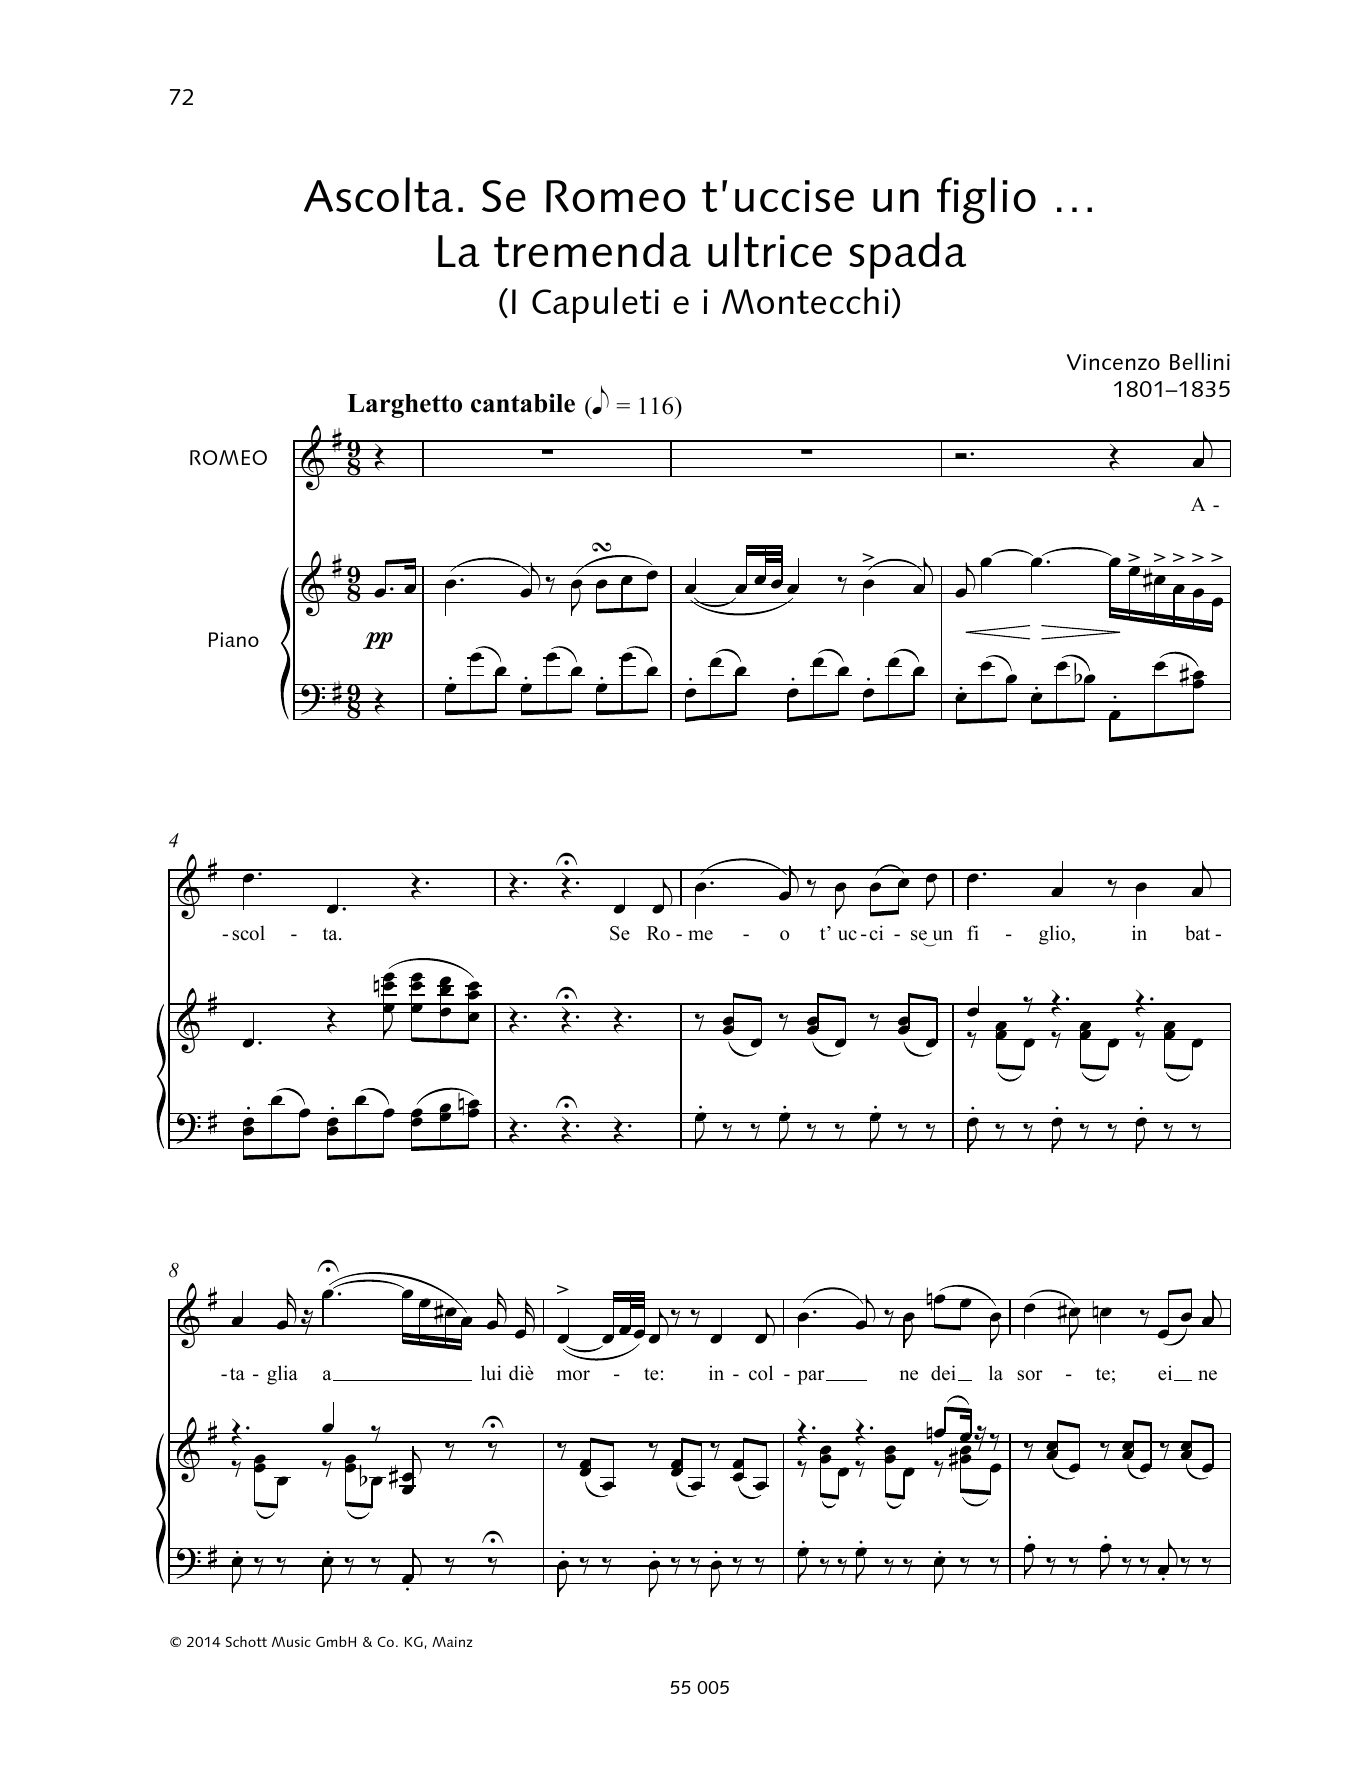 Vincenzo Bellini Ascolta. Se Romeo t'uccise un figlio... La tremenda ultrice spada Sheet Music Notes & Chords for Piano & Vocal - Download or Print PDF